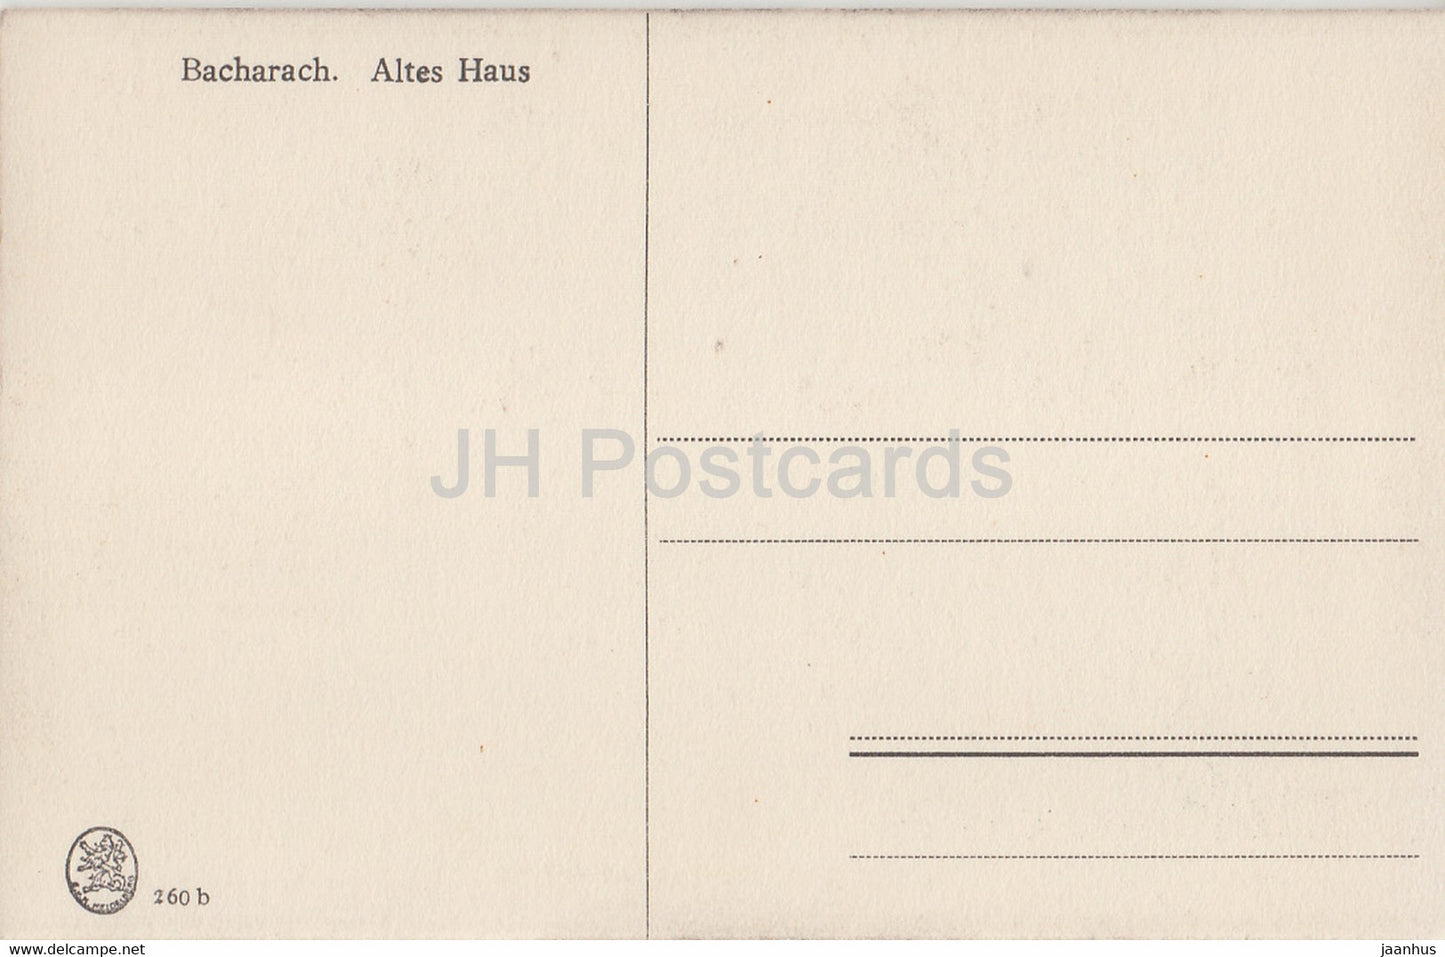 Bacharach - Altes Haus - carte postale ancienne - Allemagne - inutilisée